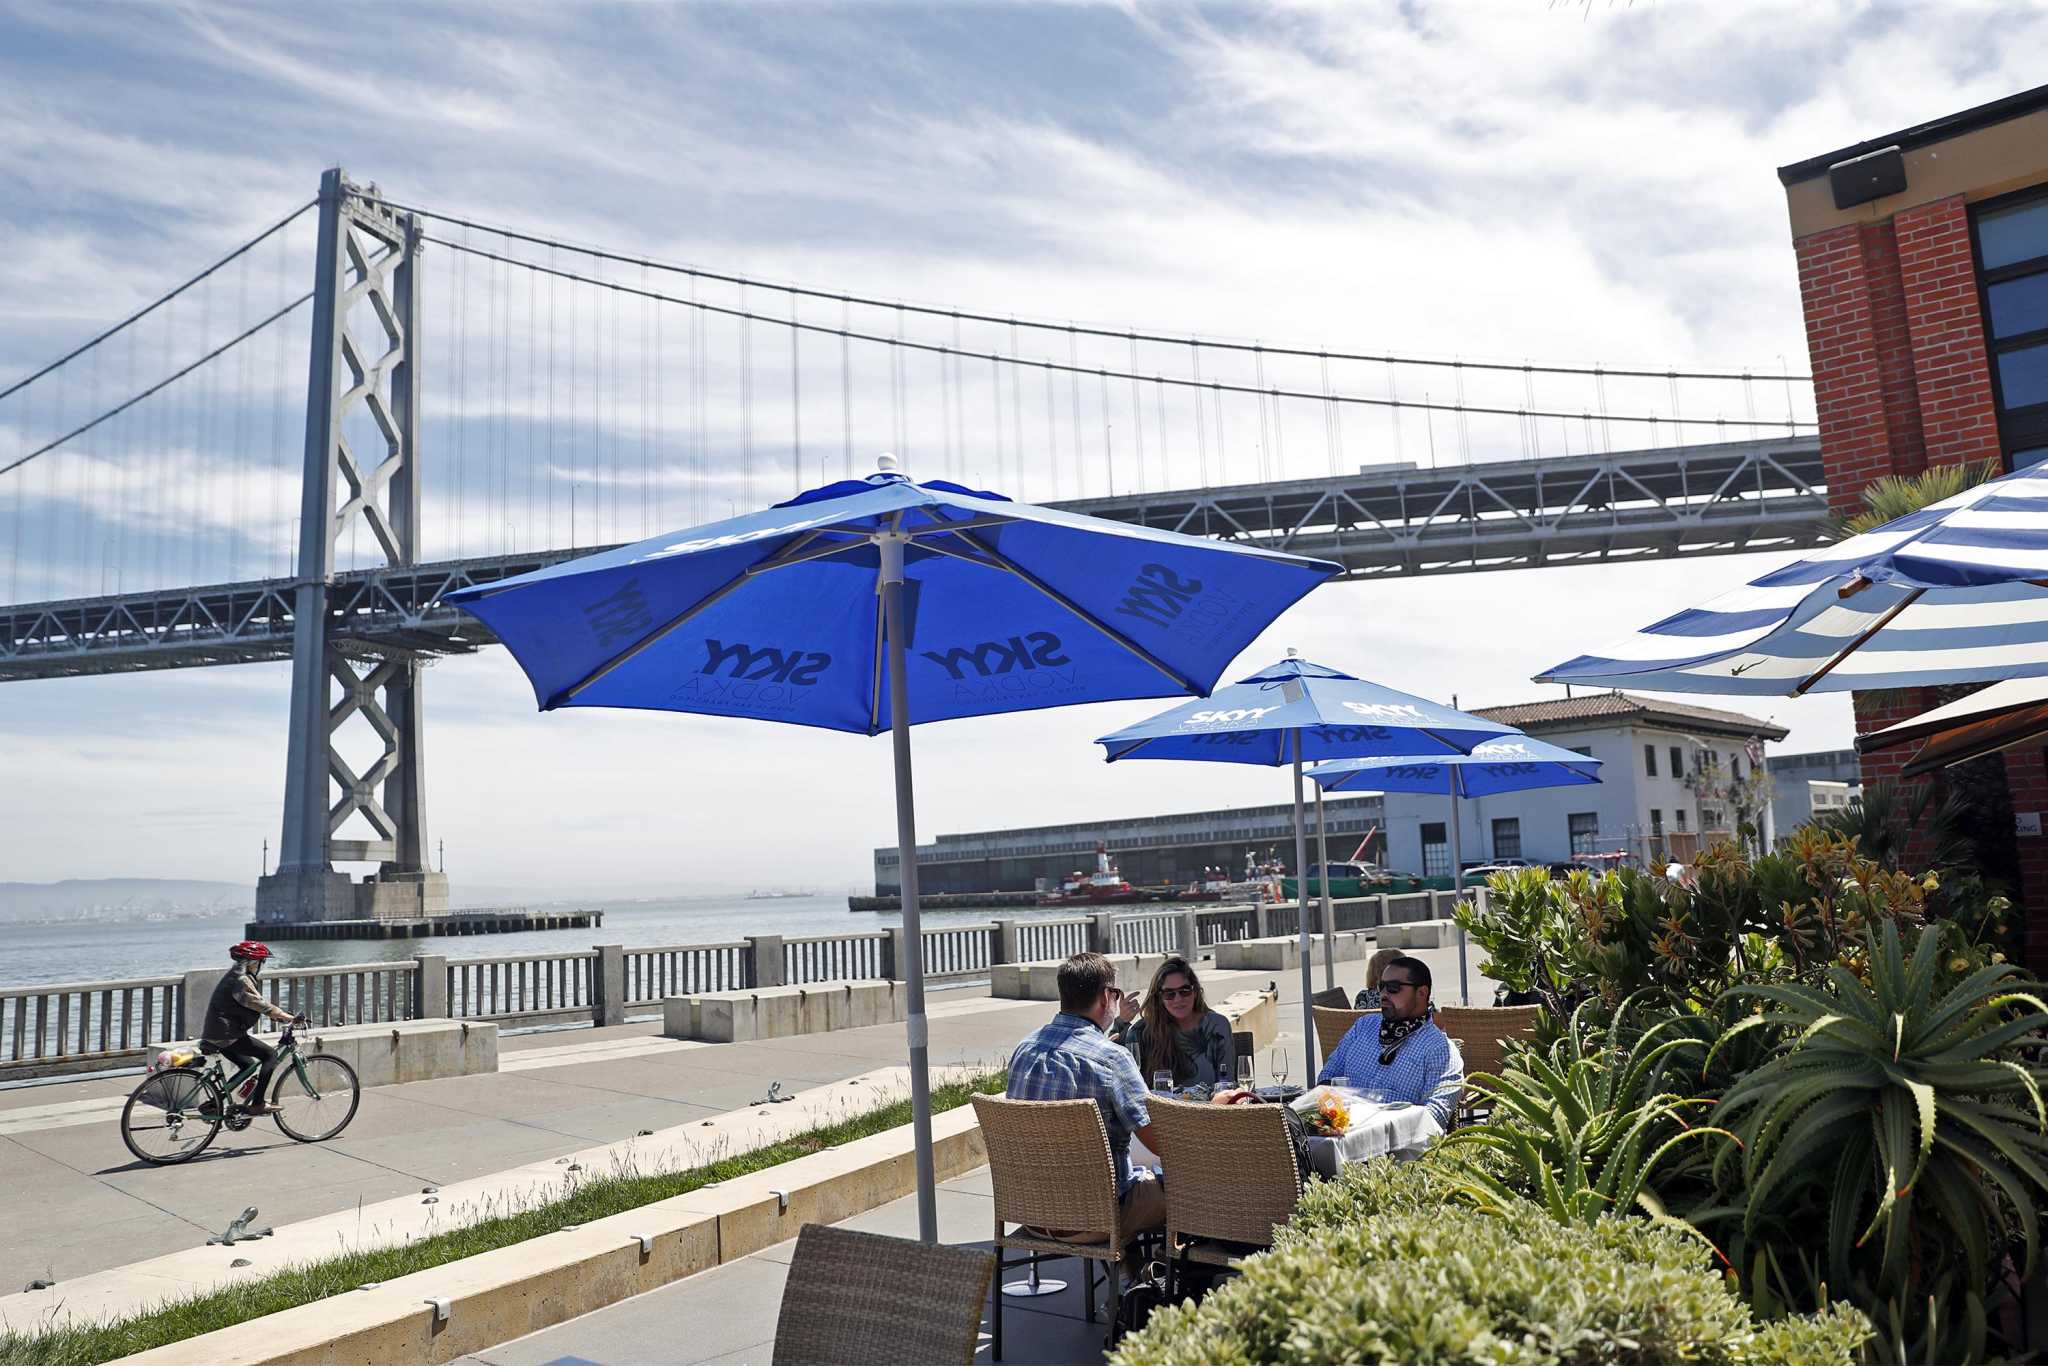 Estos 9 restaurantes del Área de la Bahía llegaron a la lista de los 100 mejores restaurantes para cenar al aire libre de OpenTable en los EE. UU.